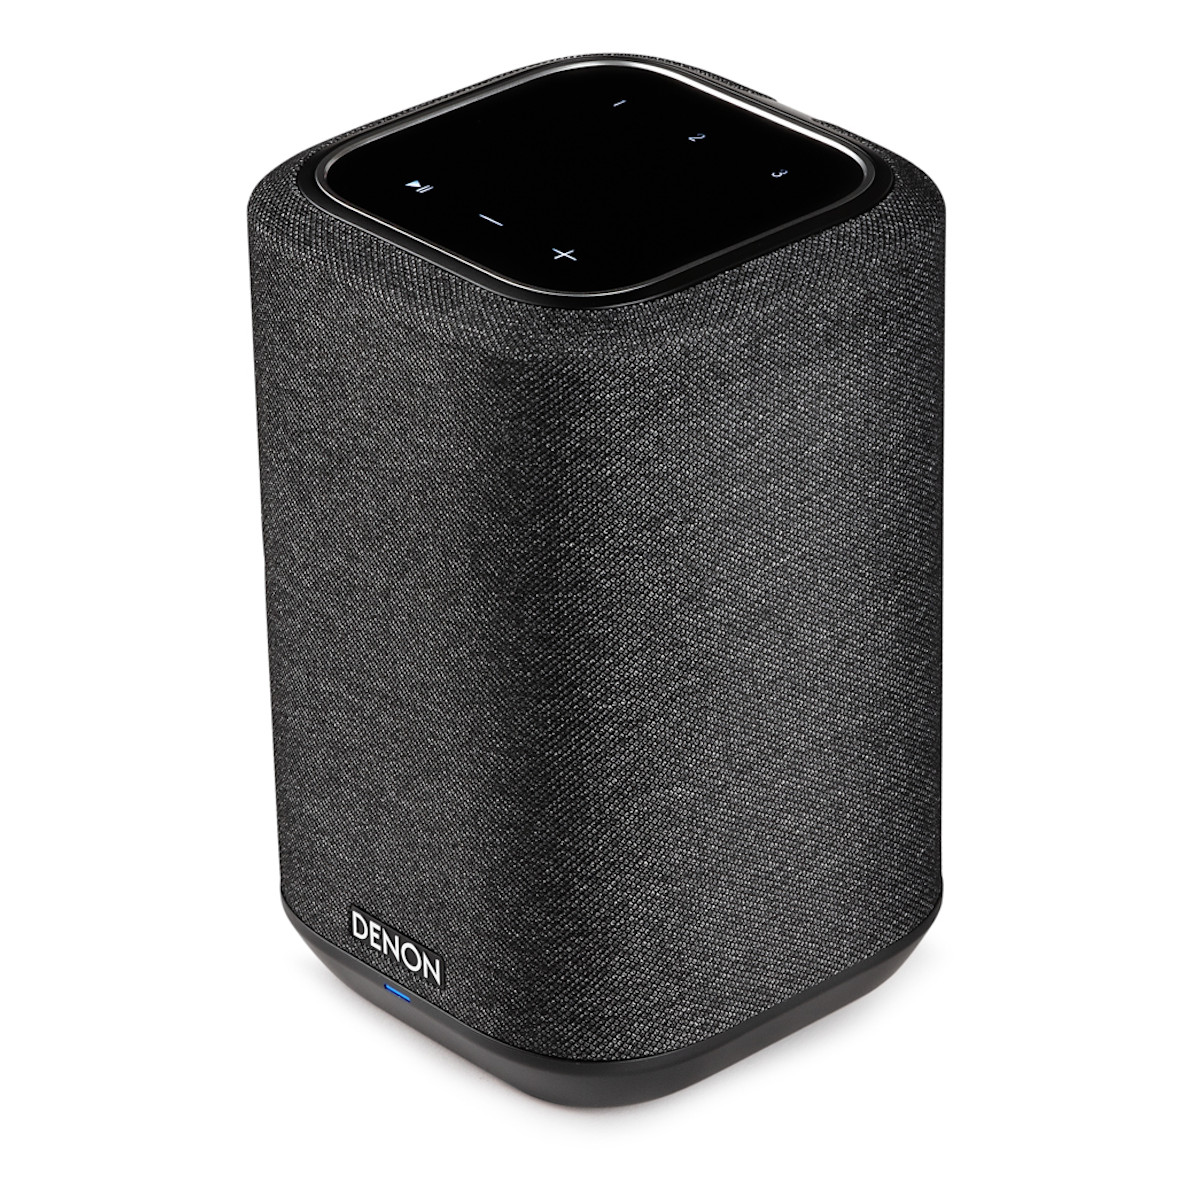 Denon Home 150 Wireless Speaker - White for sale online | eBay